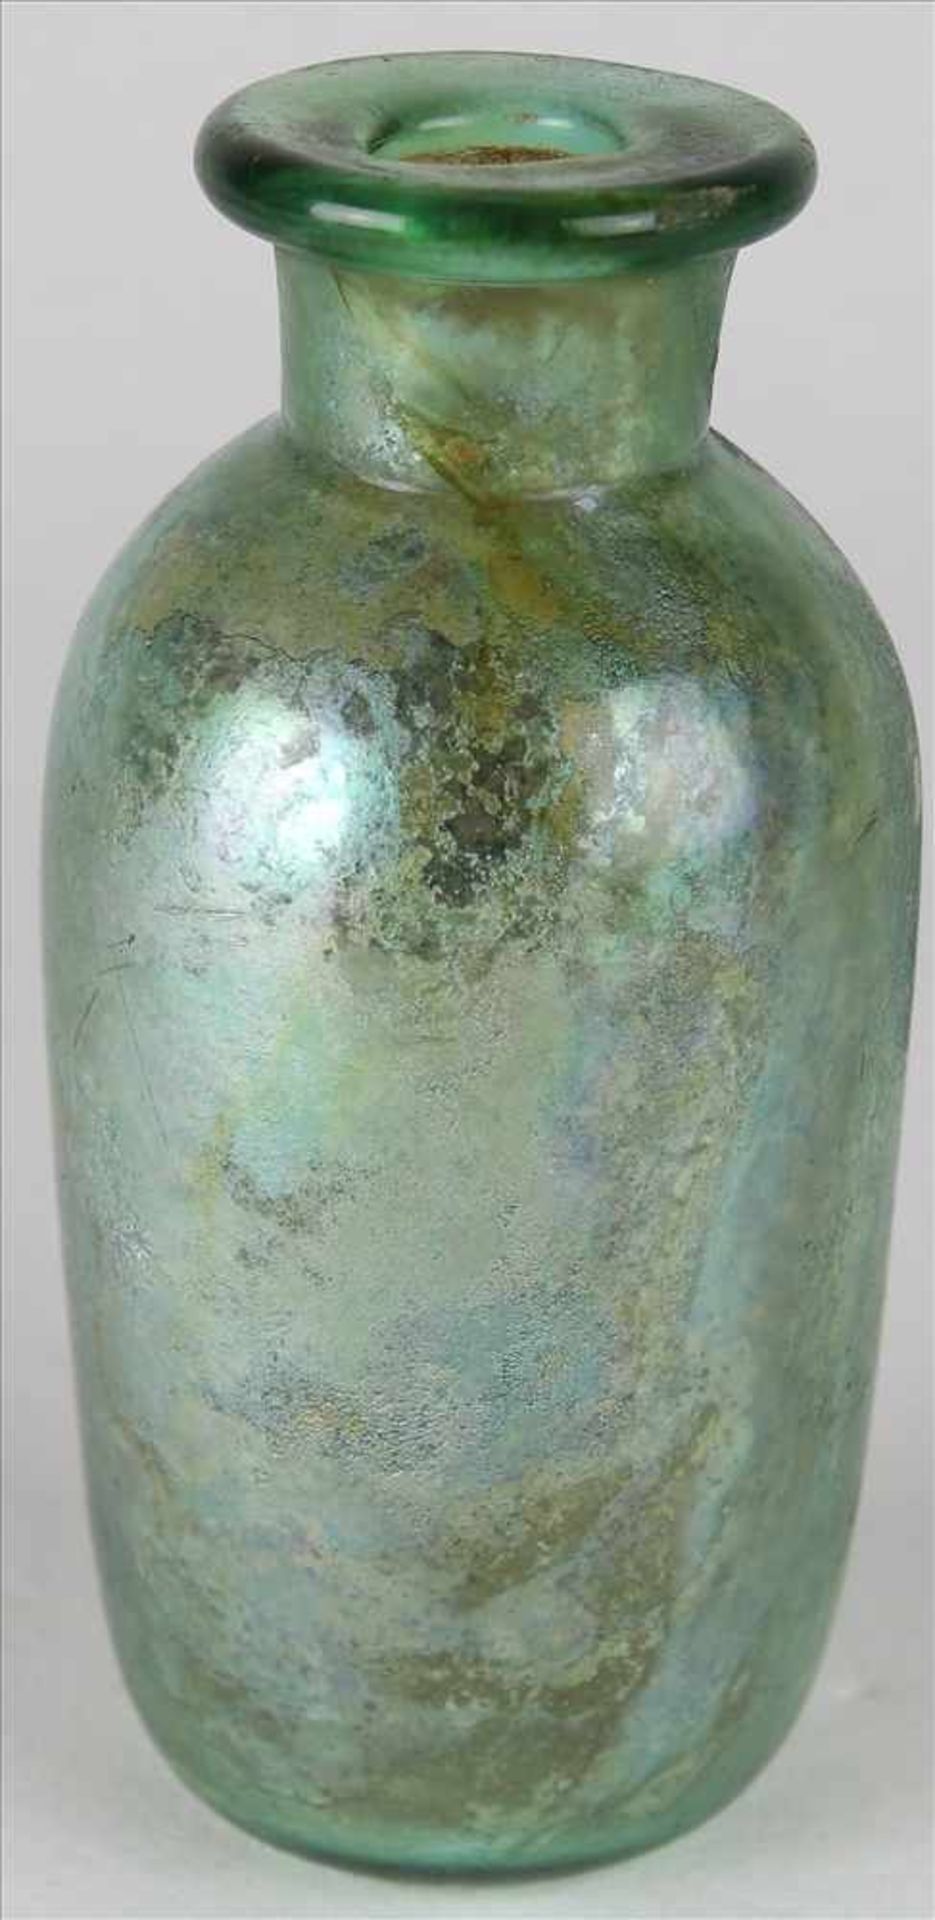 Römische ZylinderflascheCa. 3. Jh n. Chr. Dunkelgrünes Glas mit schillernder Irisierung. - Bild 2 aus 4